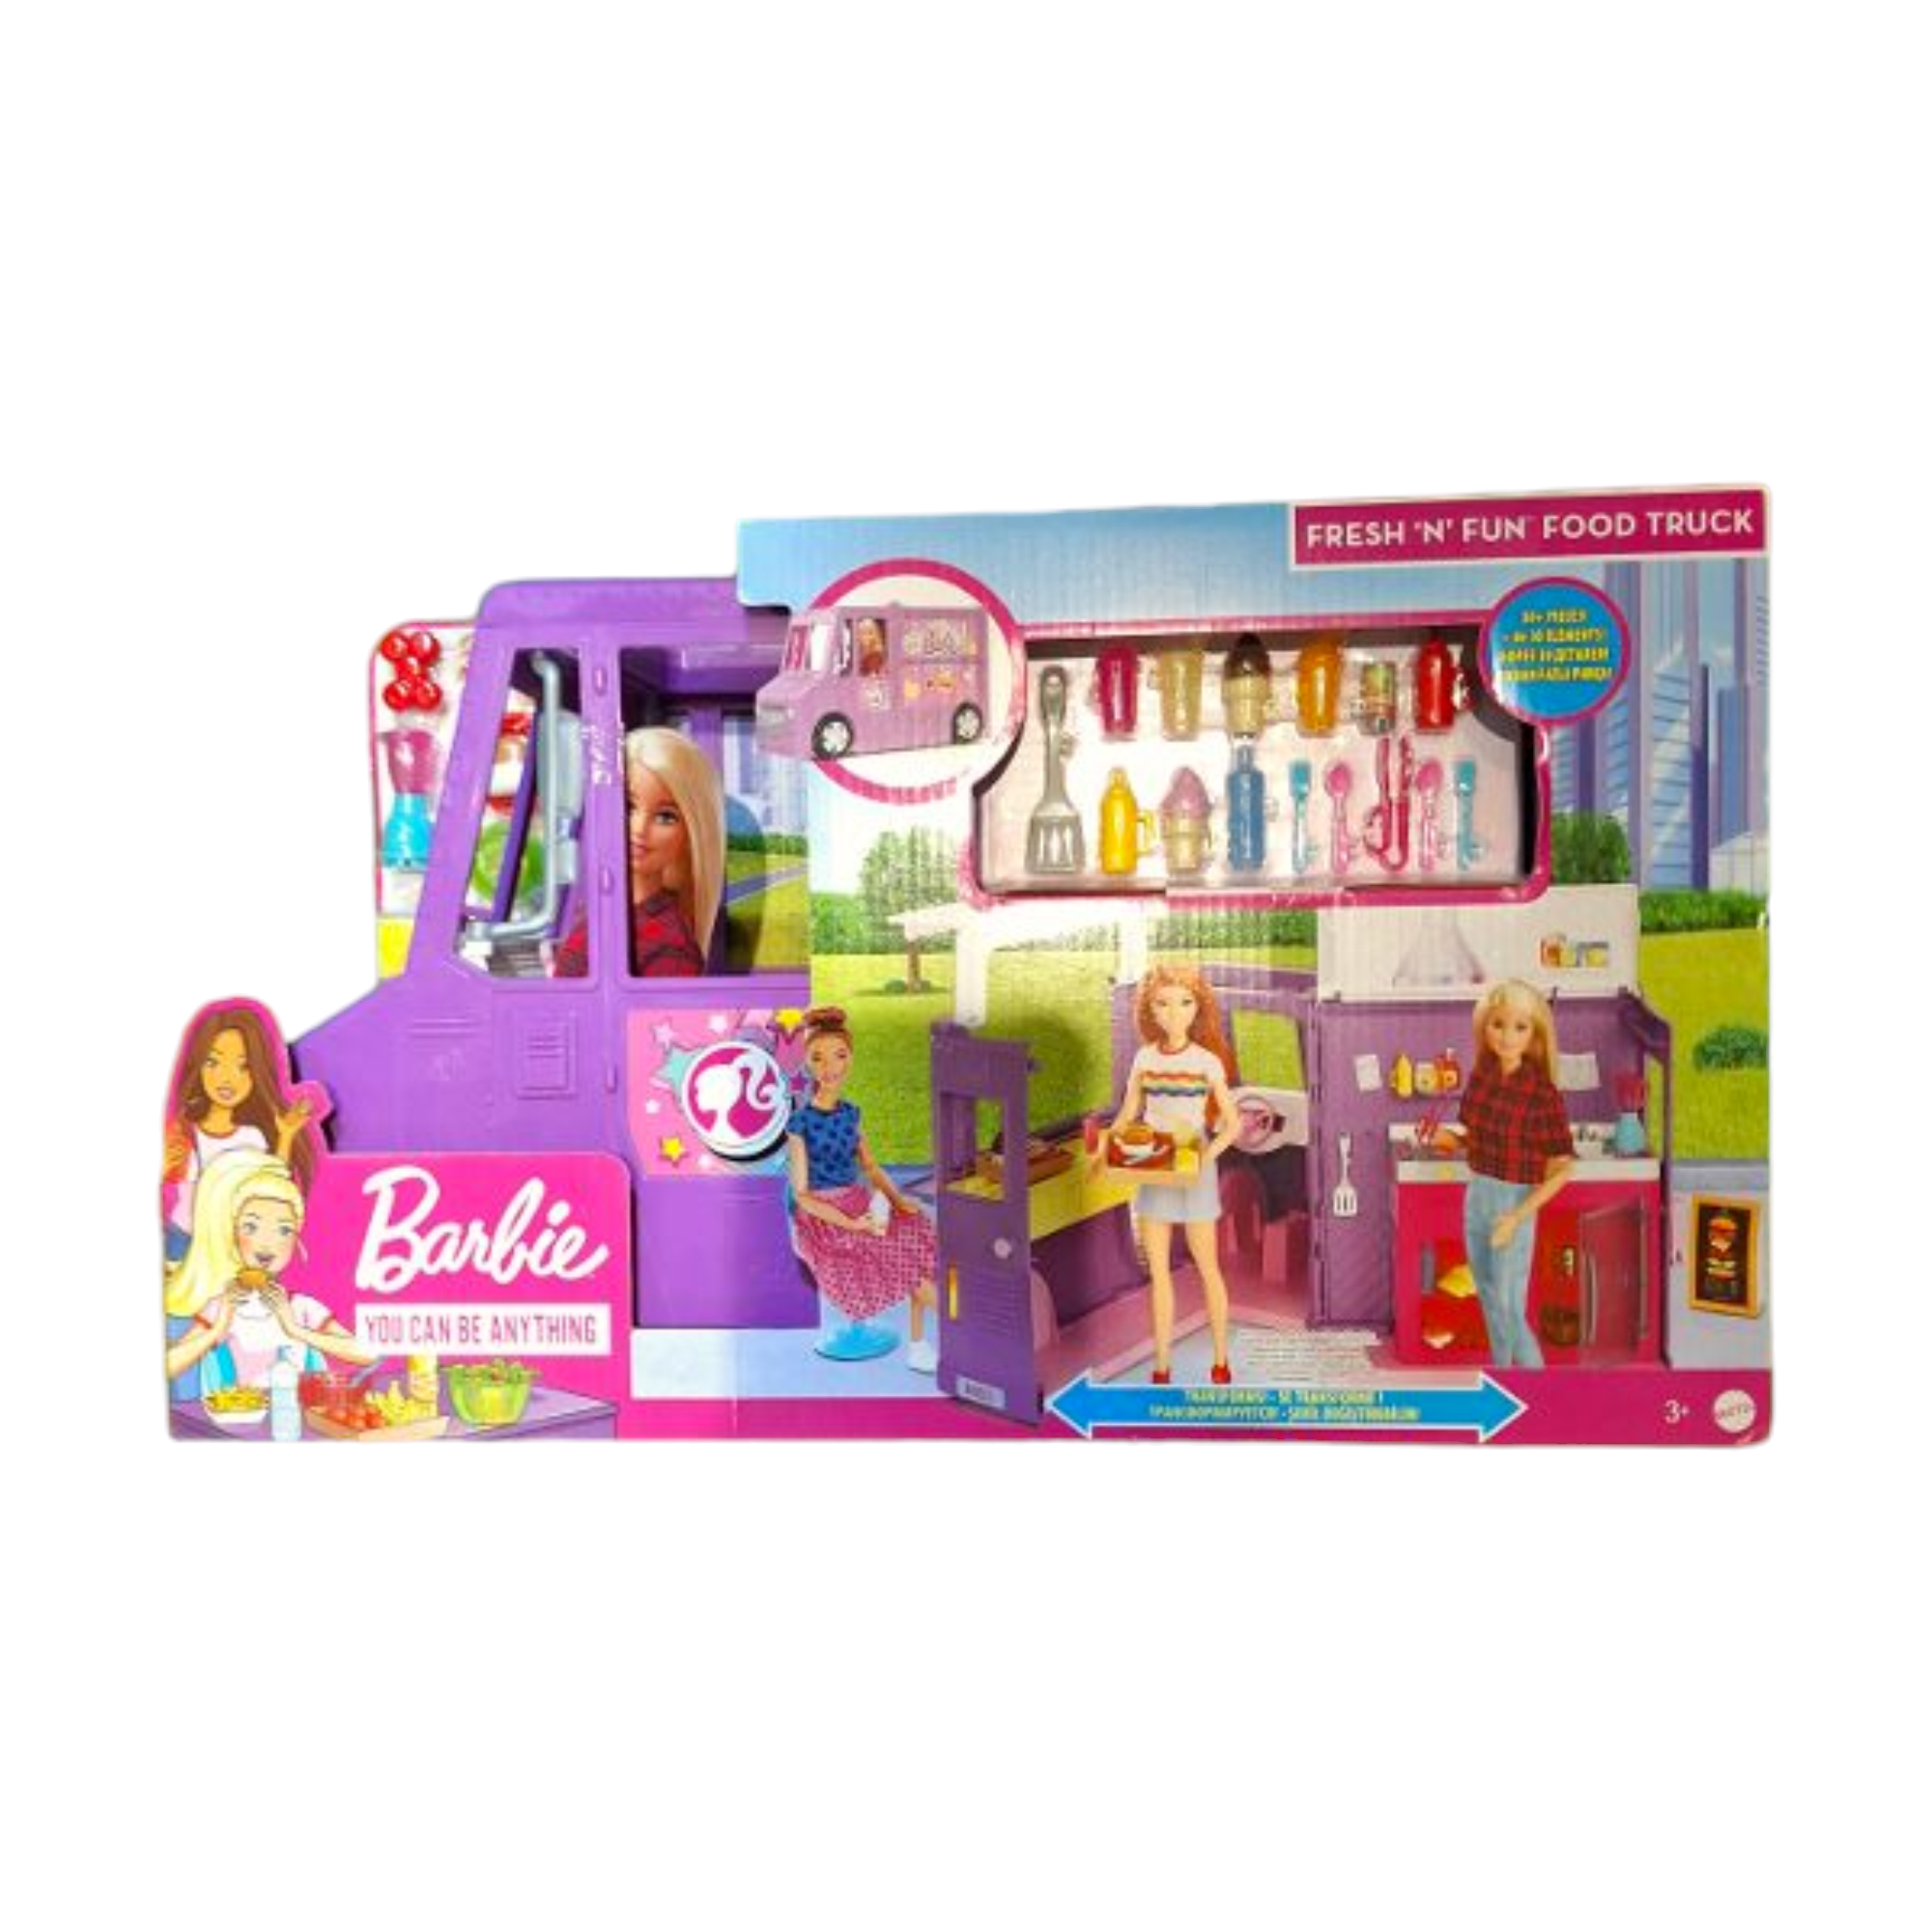 ברבי – Barbie, משאית אוכל גדולה הנפתחת לדוכן עם אביזרים נלווים מבית Mattel